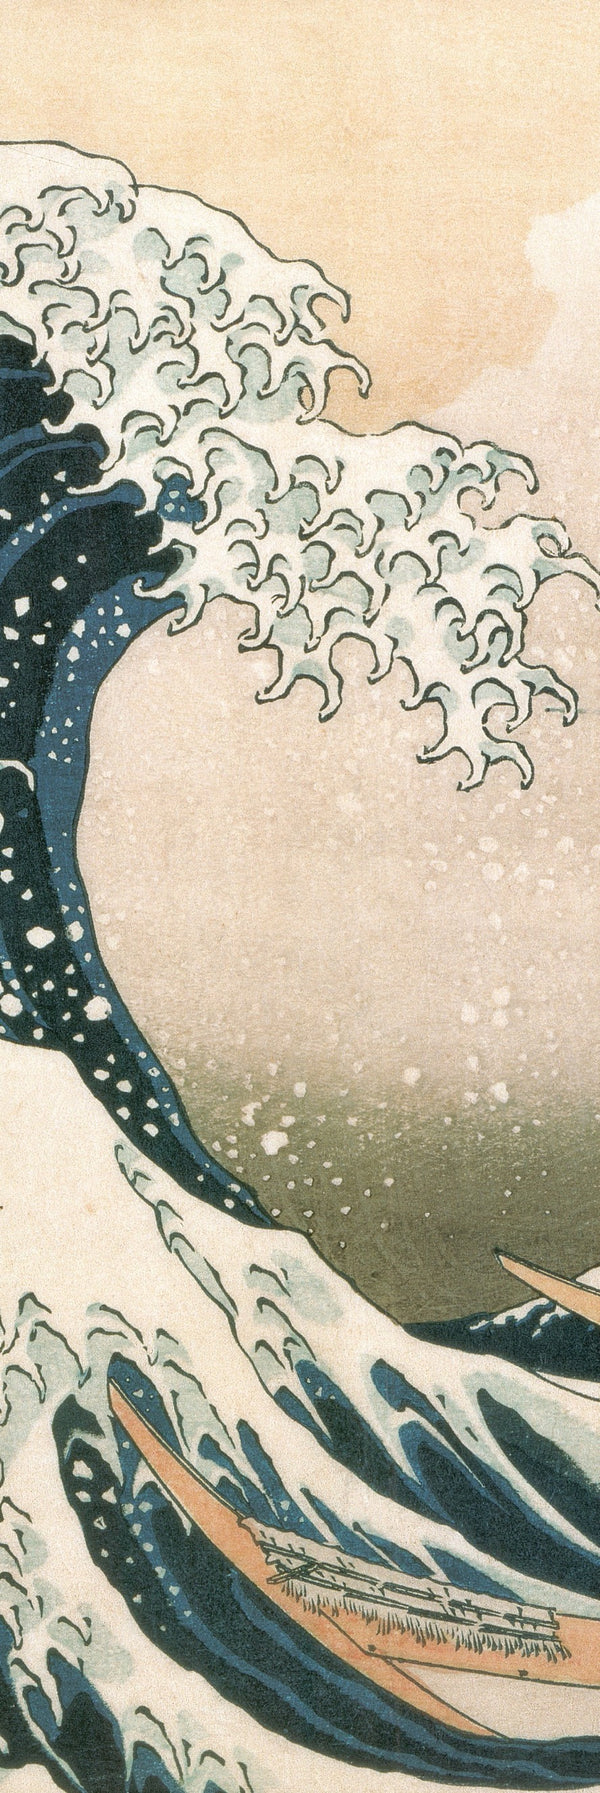 The large wave at Kanagawa, 1830-1834 by Katsushika Hokusai - 13 X 38 Inches (Art Print)